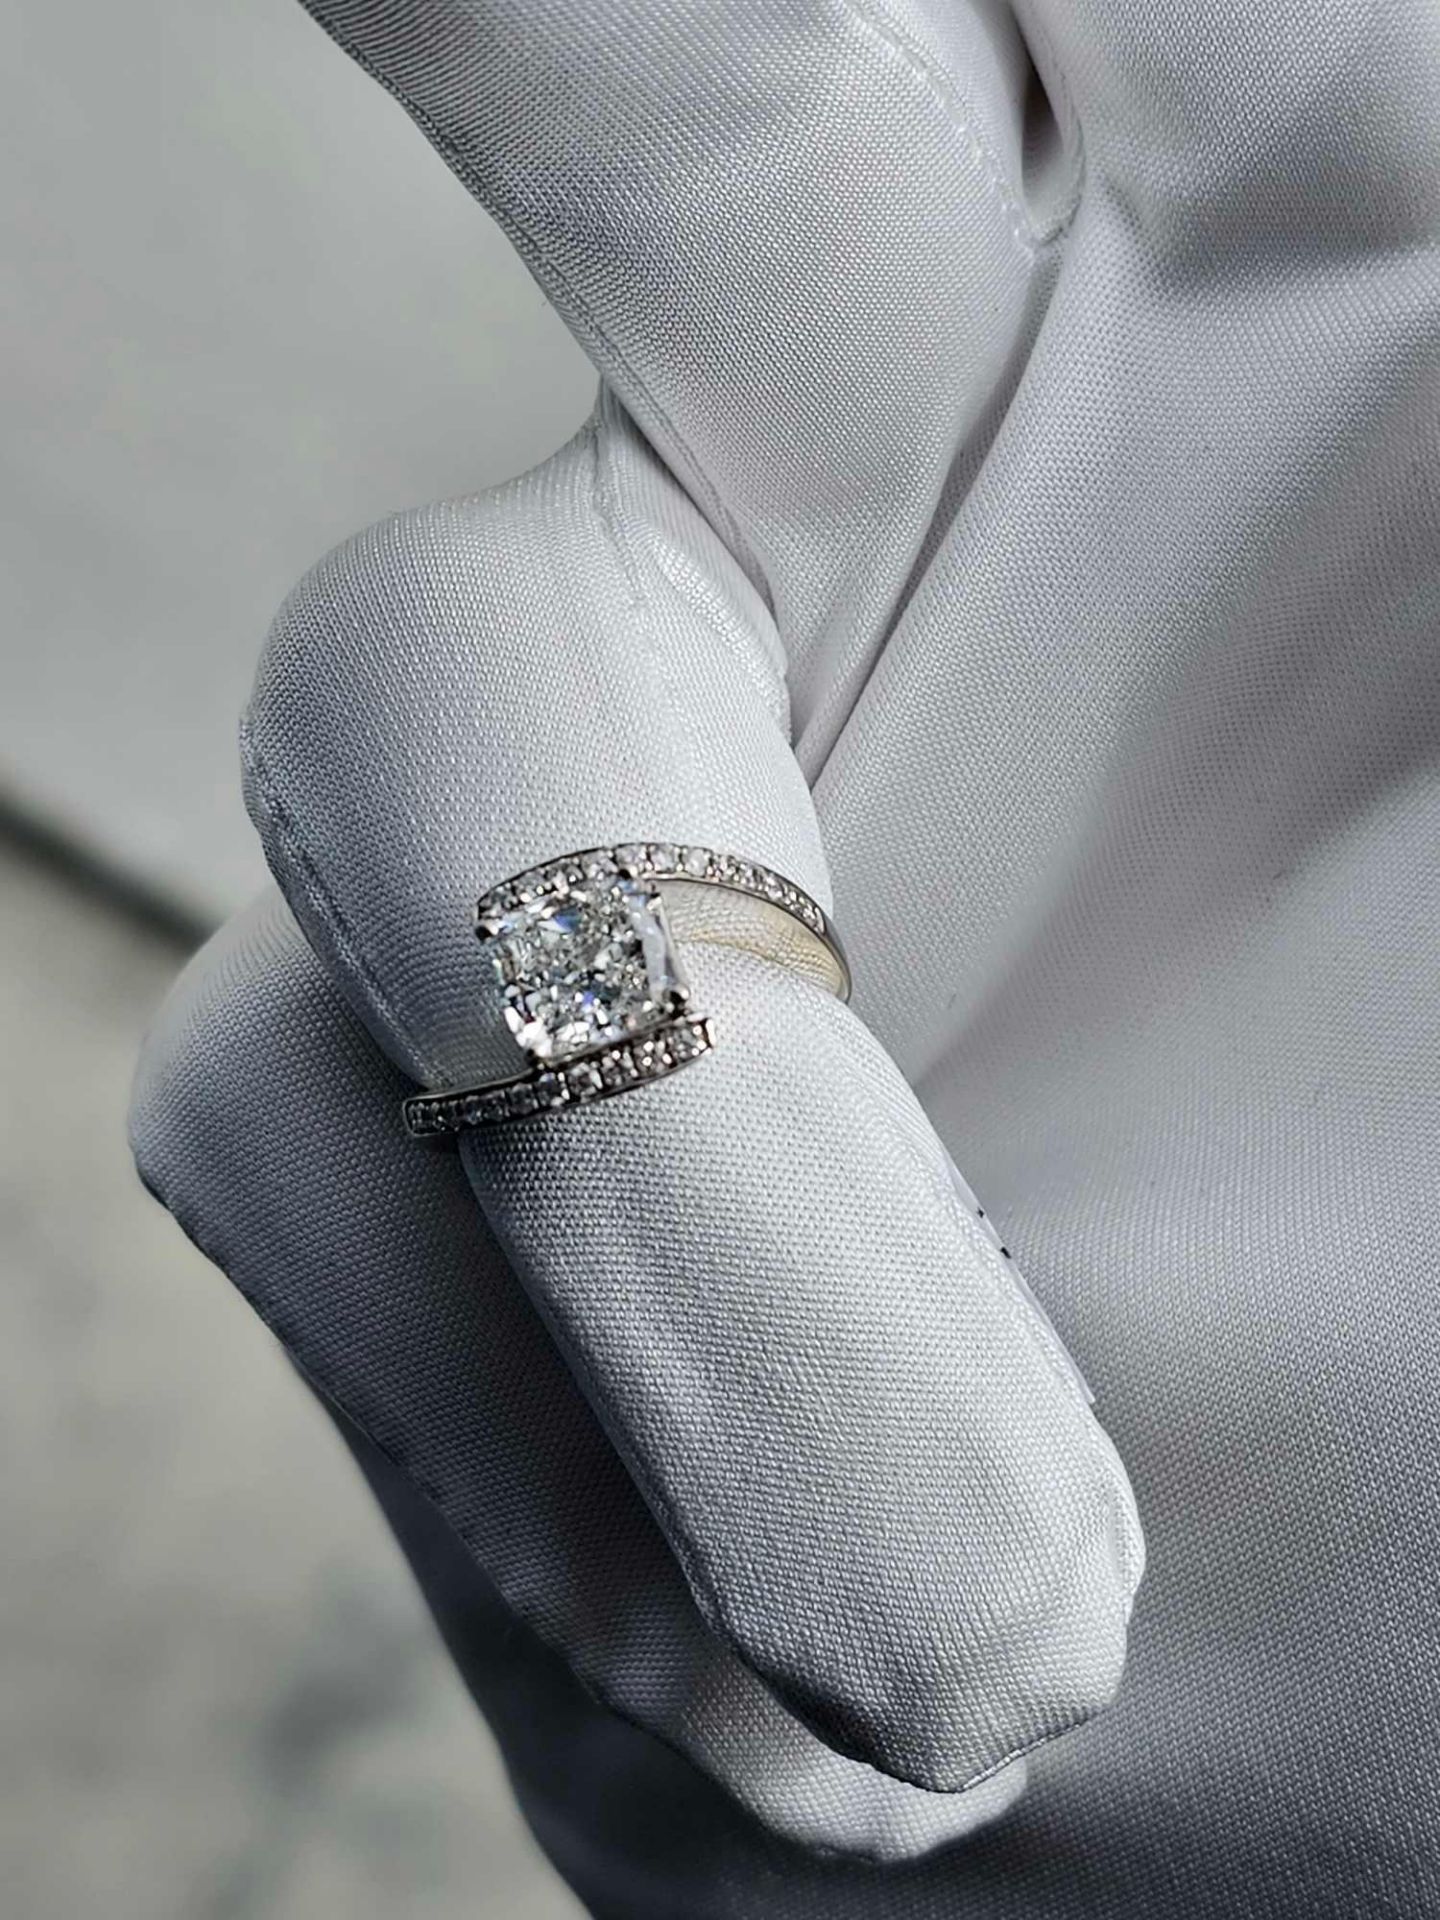 2 CT Diamond Ring (diamond is really nice) - Image 18 of 19